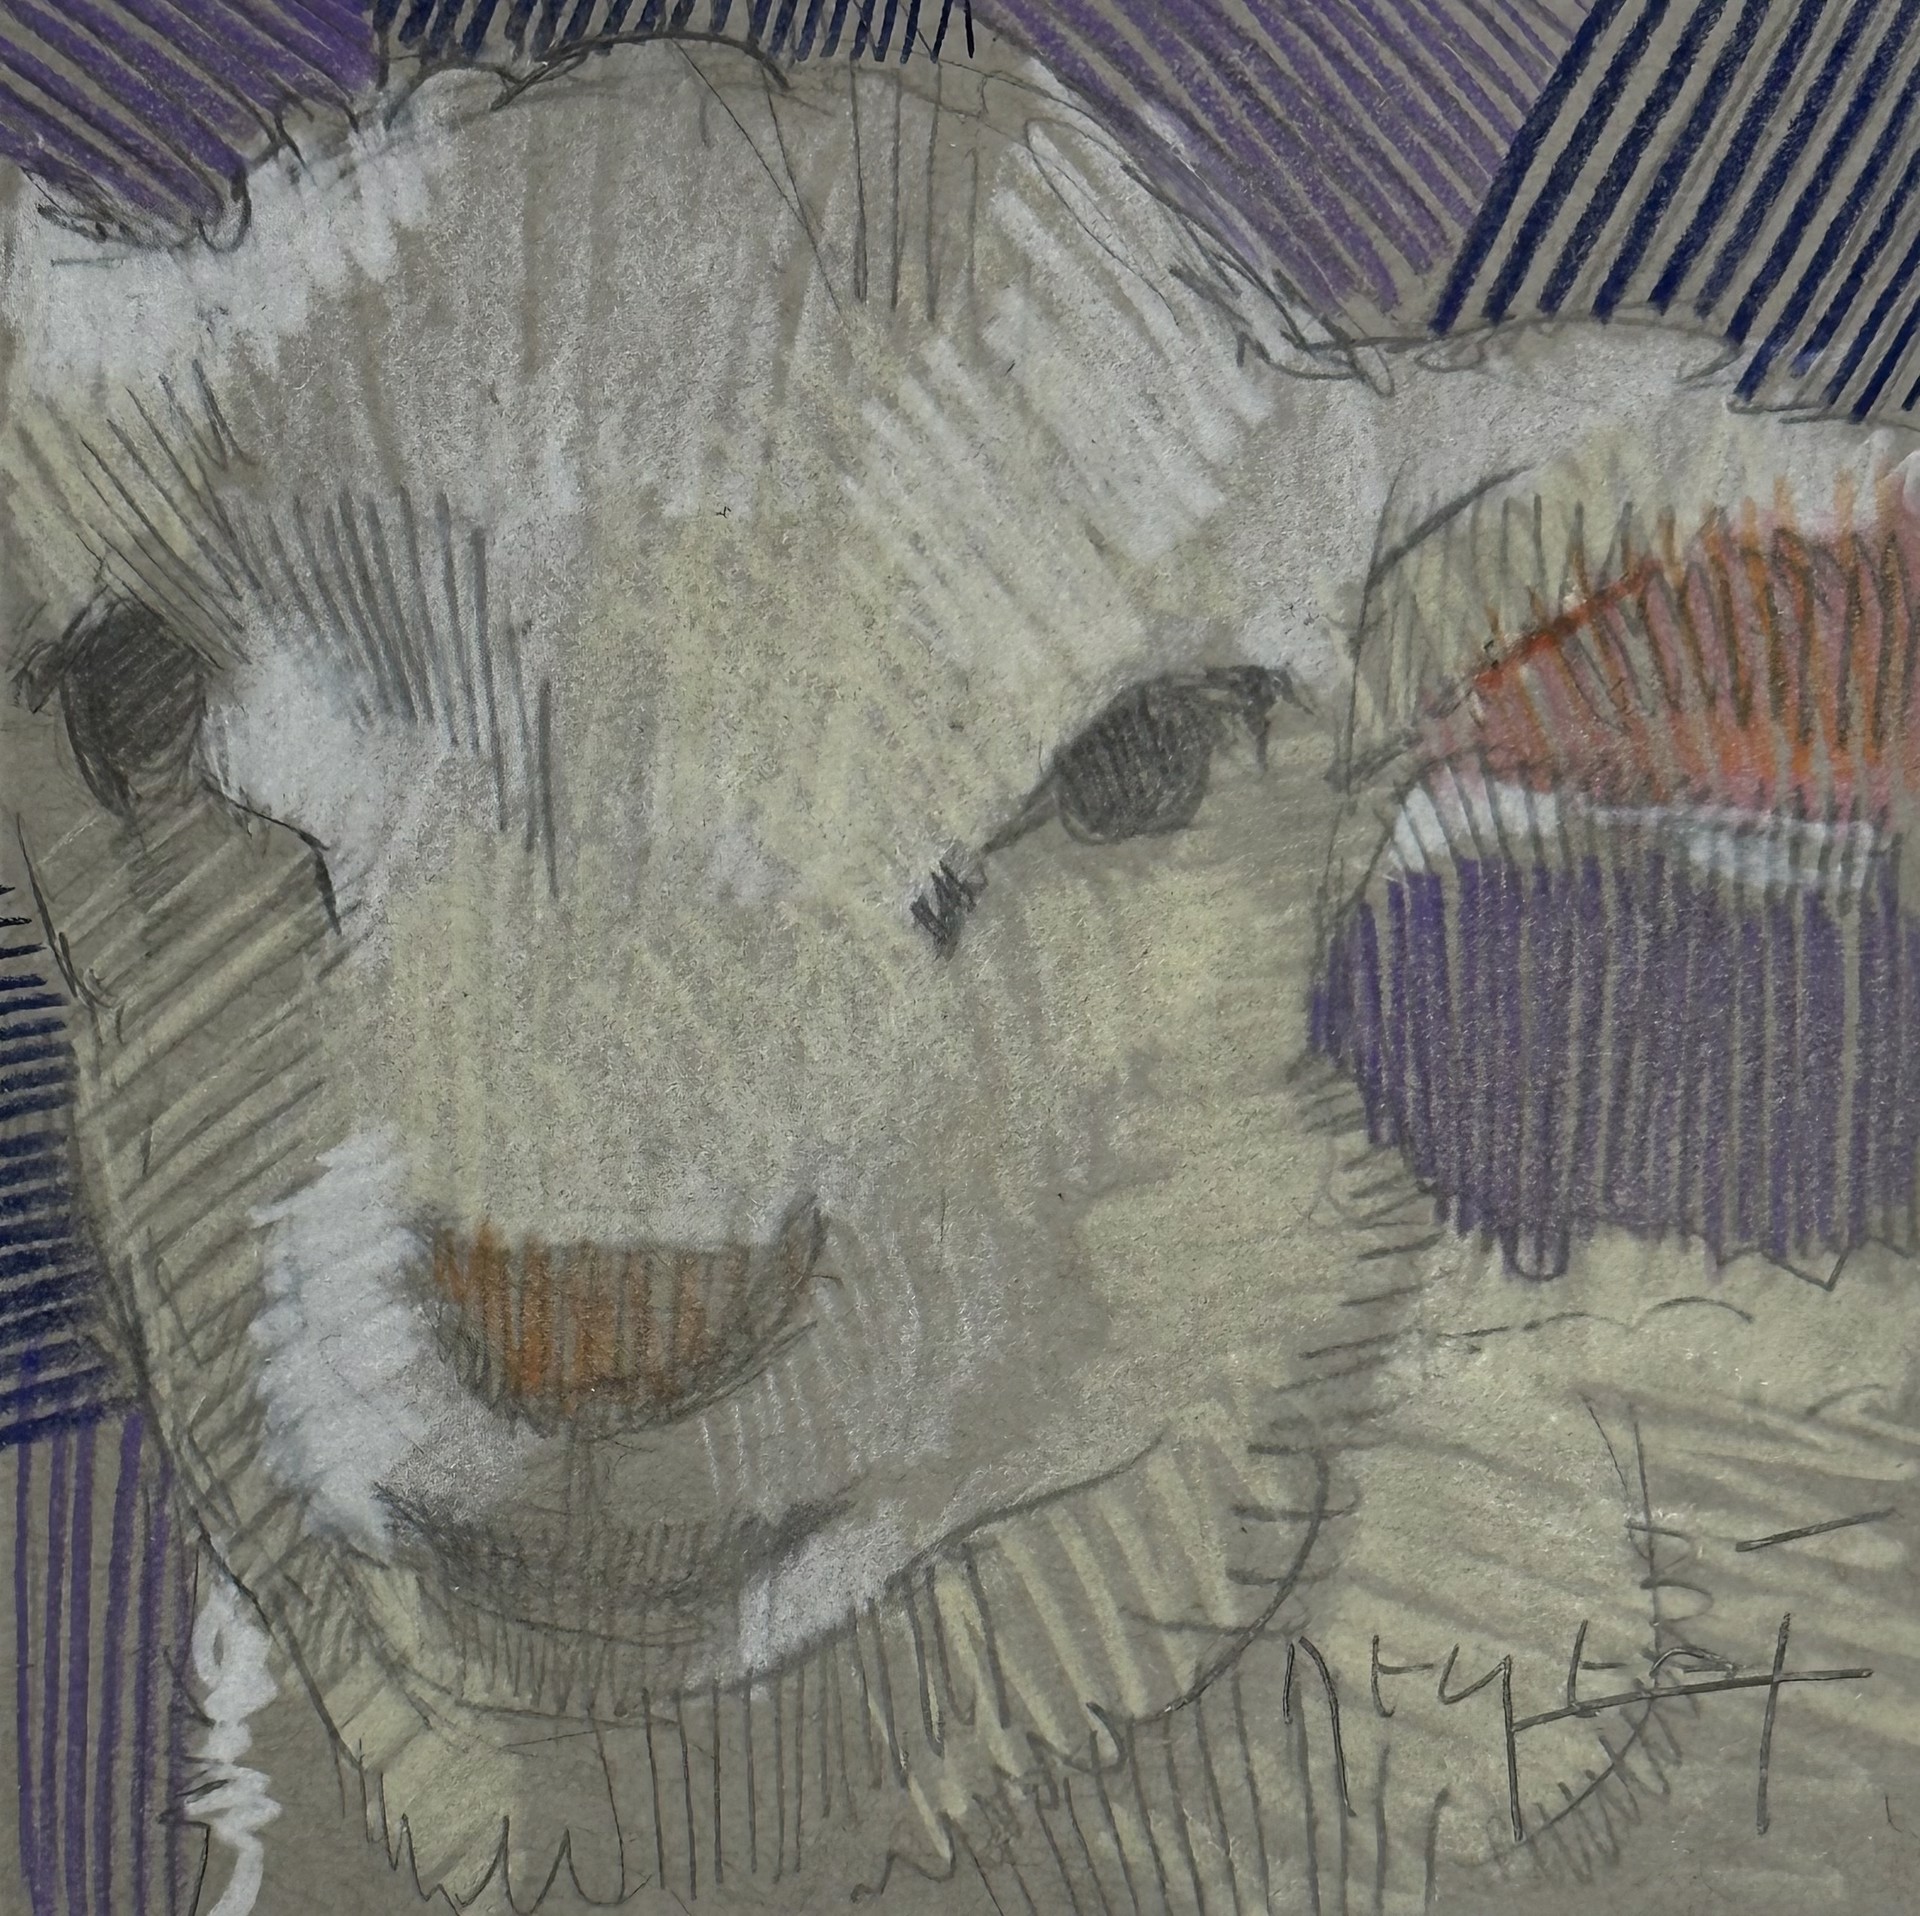 Mini Farm: Lamb by Tim Jaeger